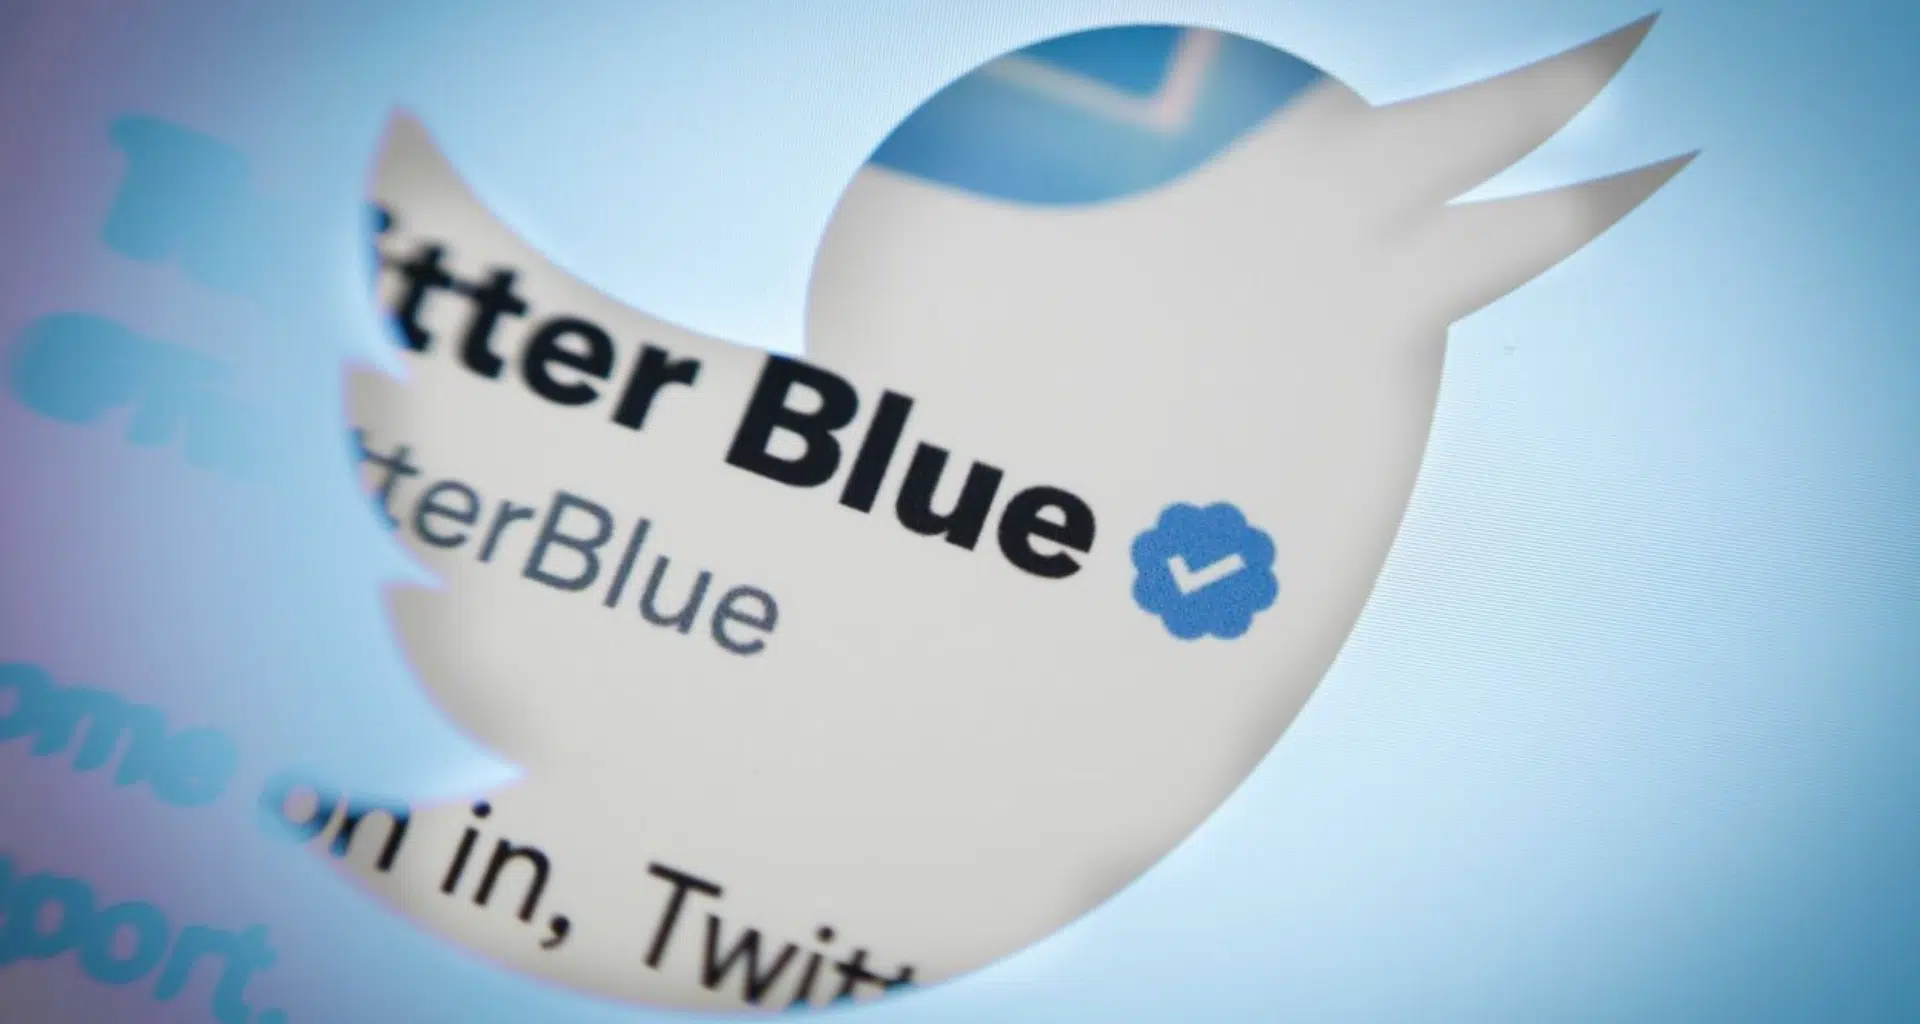 Enquetes do twitter serão exclusivas para usuários twitter blue. Algoritmo da rede social também recomendará apenas contas twitter blue na aba para você. Novidades vêm sendo criticada por especialistas